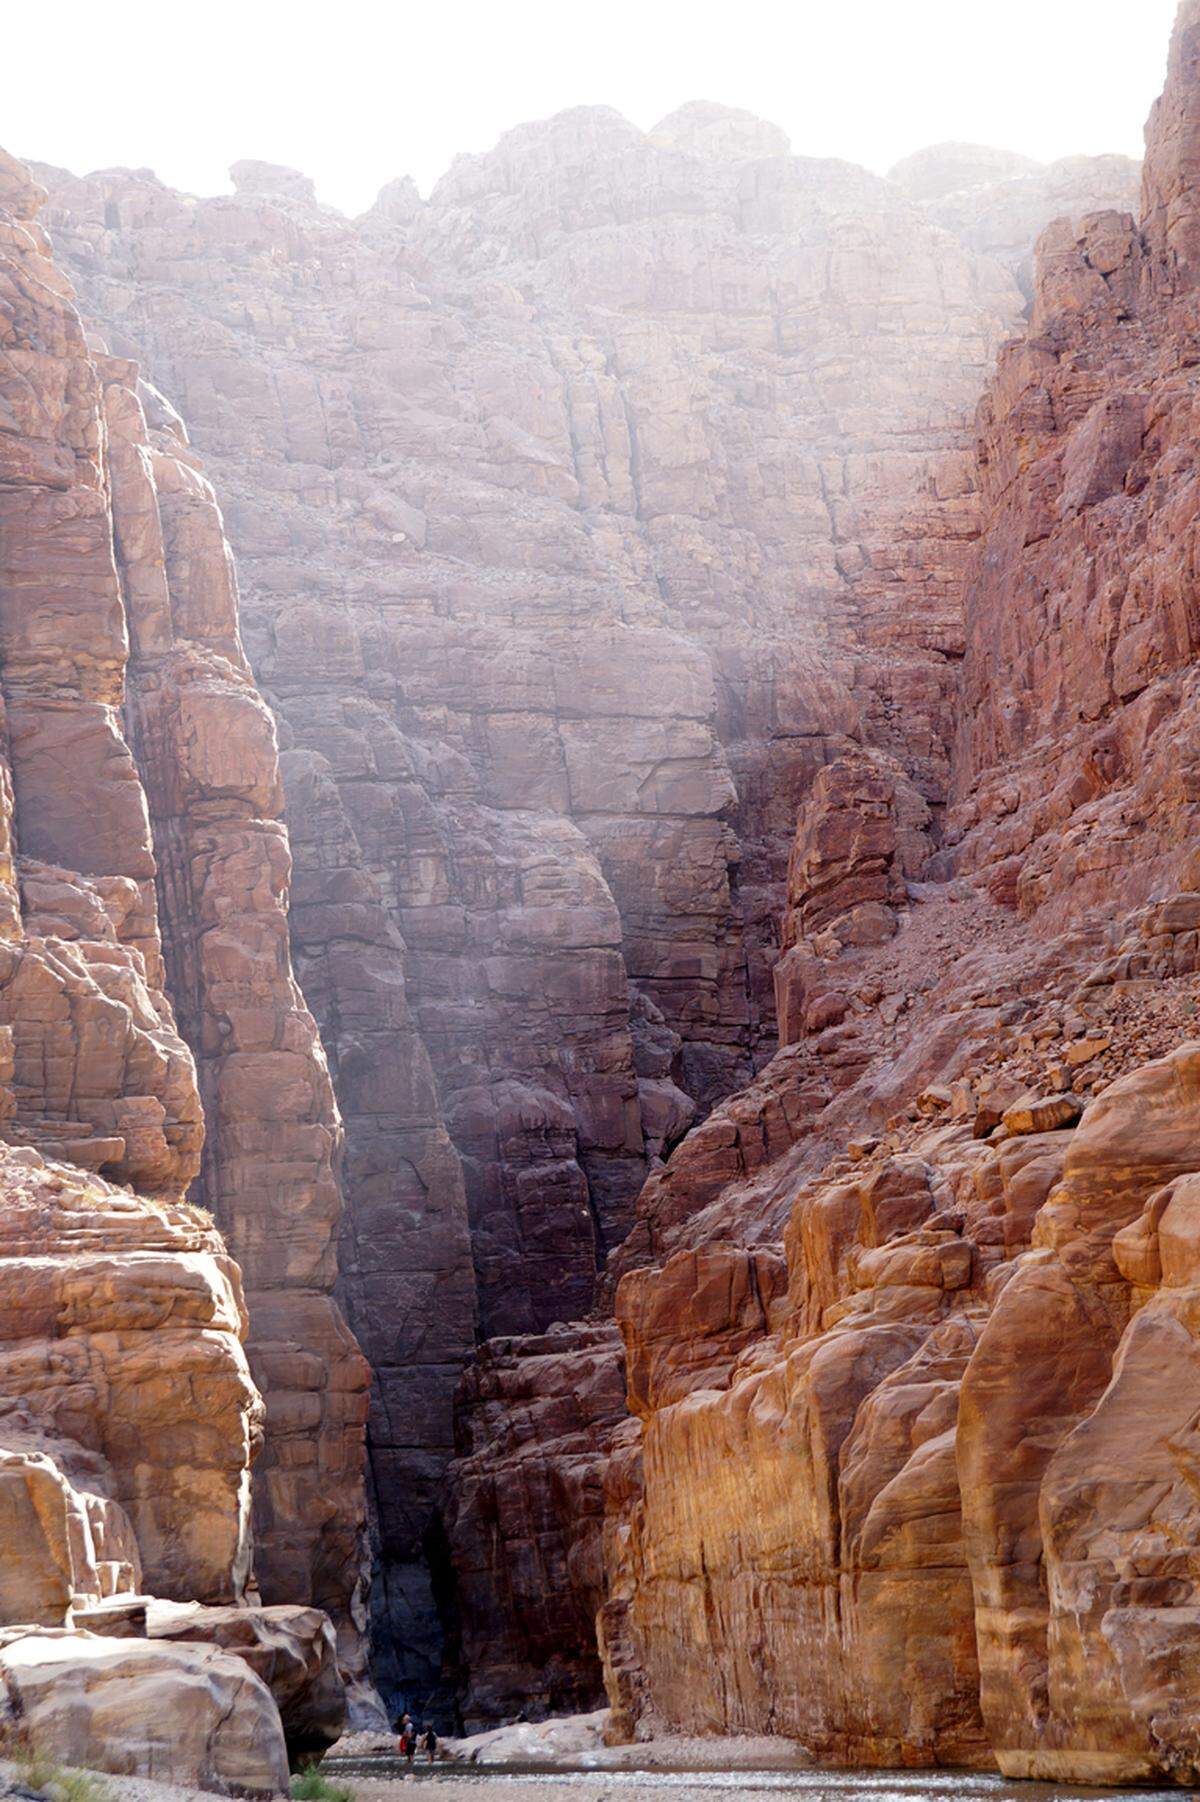 Das Wadi Mujib wird als "Grand Canyon Jordaniens" bezeichnet. Der darin fließende Bach hat sich über Jahrtausende durch das poröse Gestein gefräst und eine malerische Landschaft geschaffen.